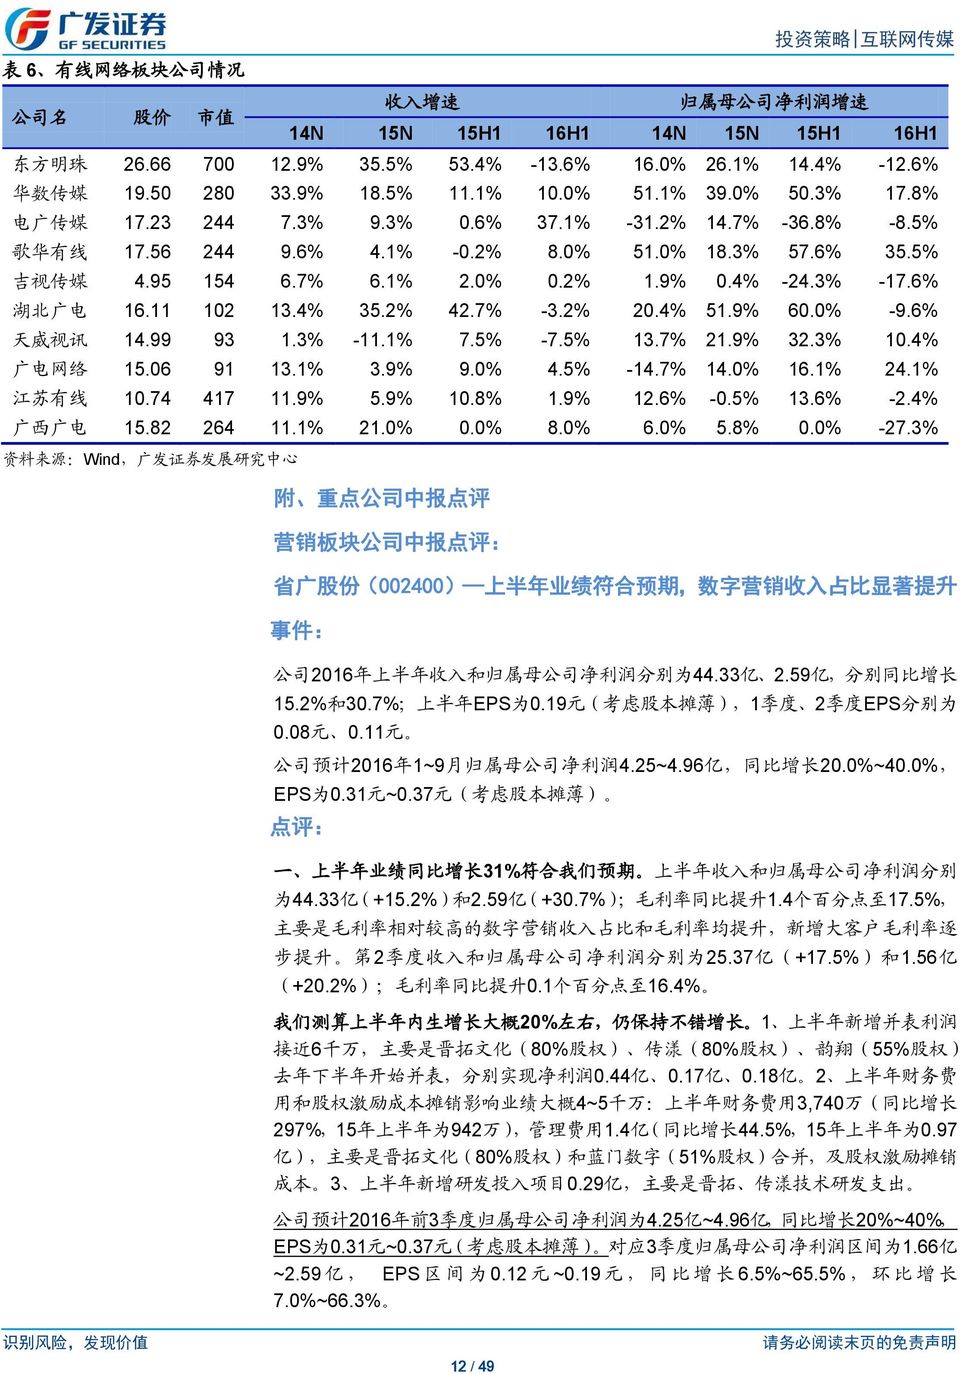 95 154 6.7% 6.1% 2.0% 0.2% 1.9% 0.4% -24.3% -17.6% 湖 北 广 电 16.11 102 13.4% 35.2% 42.7% -3.2% 20.4% 51.9% 60.0% -9.6% 天 威 视 讯 14.99 93 1.3% -11.1% 7.5% -7.5% 13.7% 21.9% 32.3% 10.4% 广 电 网 络 15.